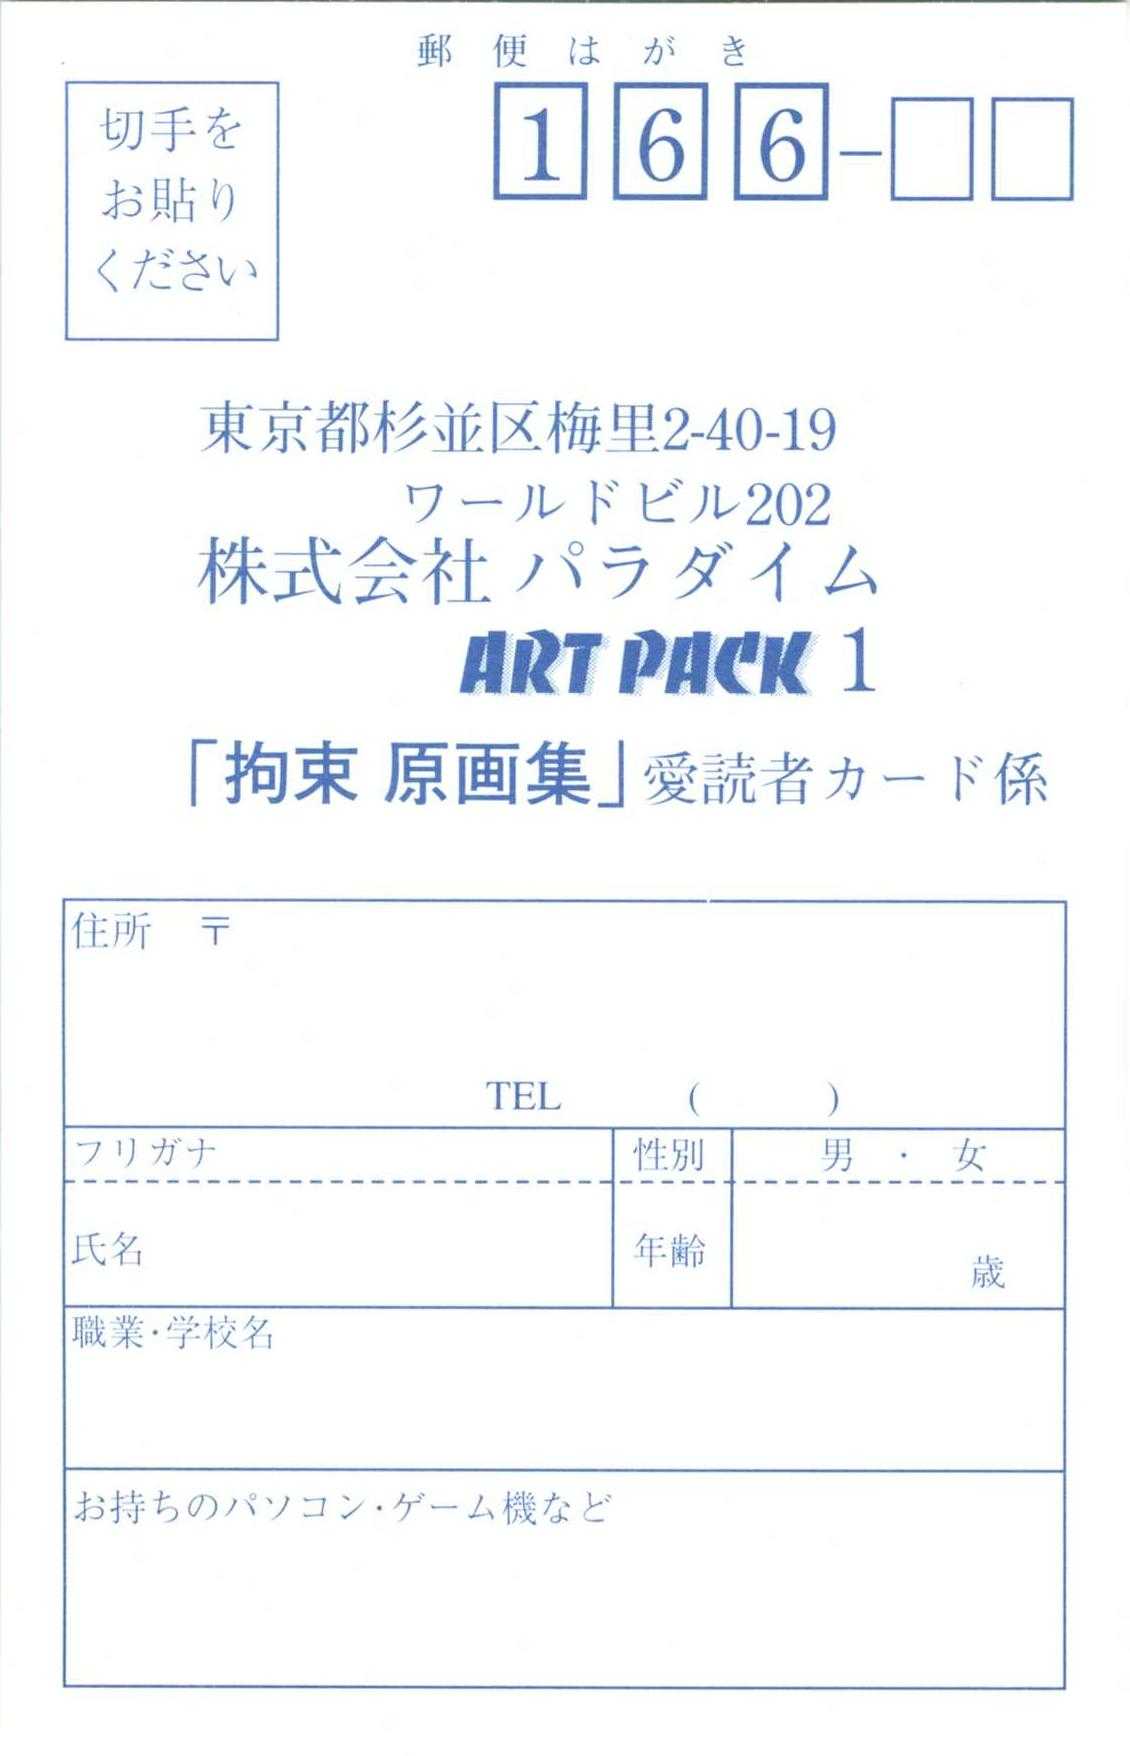 [PARADIGM] Art Pack 1 Kousoku Original Artworks (原画集) [パラダイム] Art Packシリーズ1 拘束 原画集